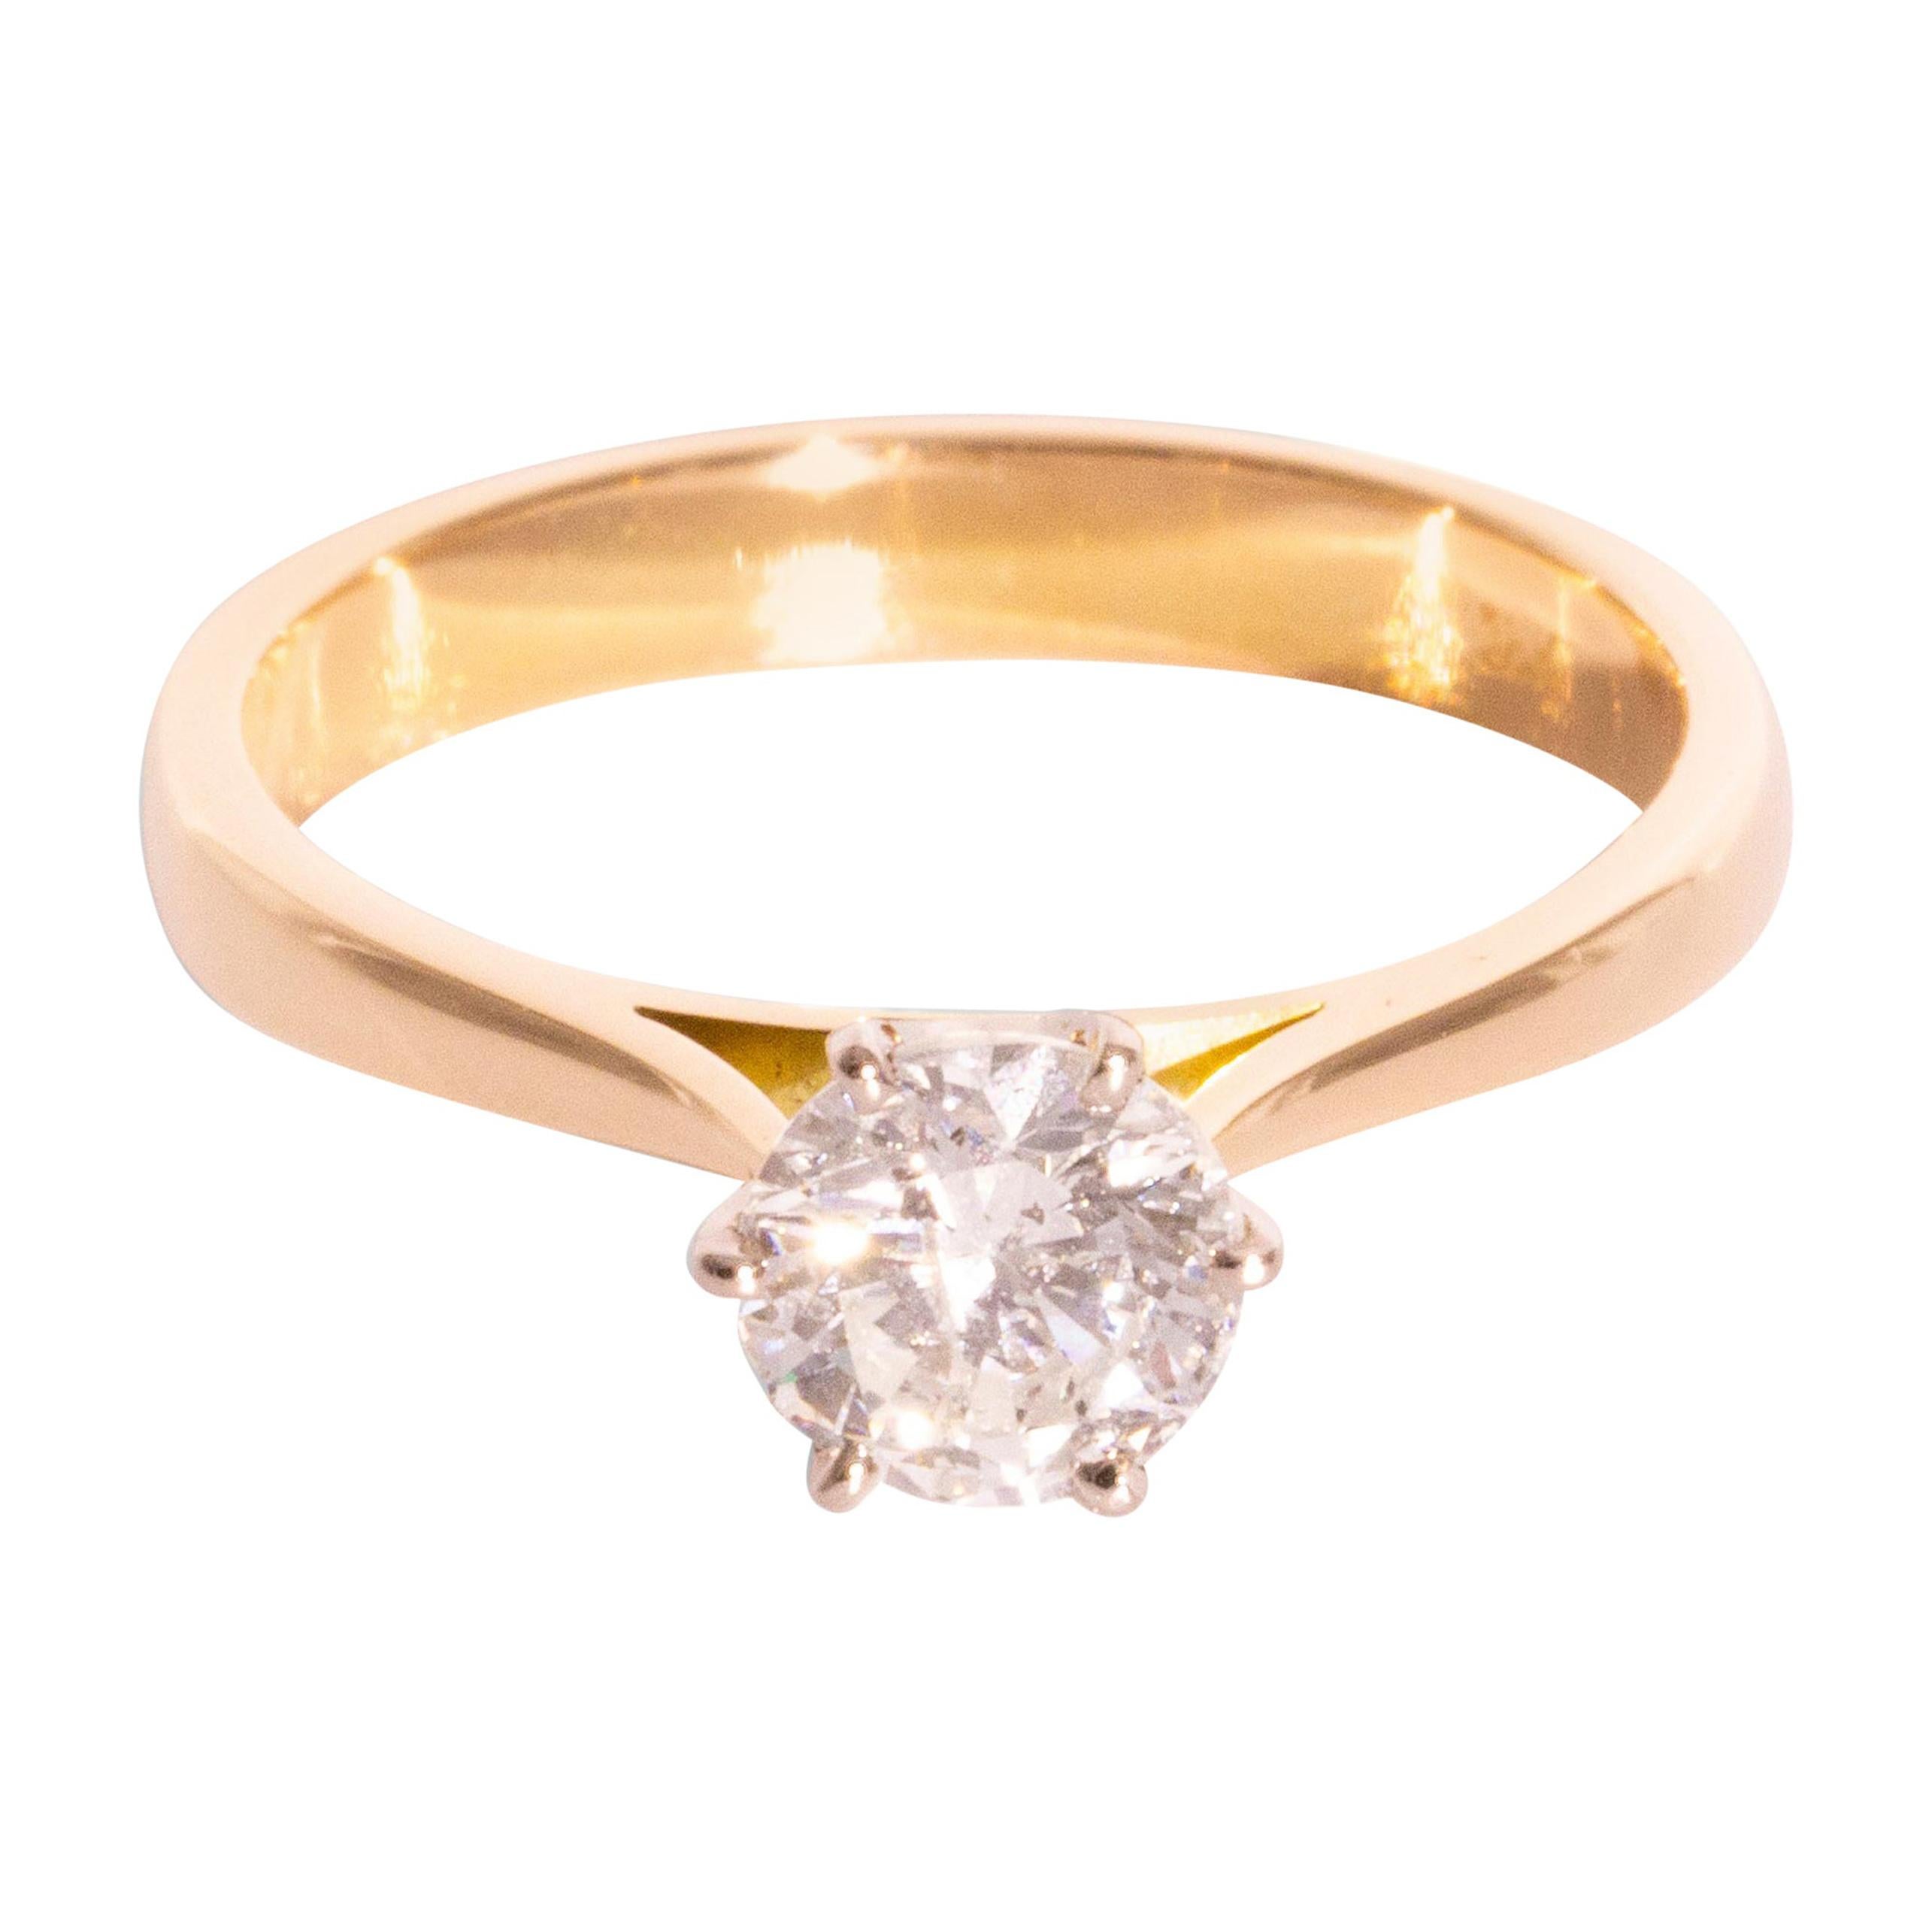 1.00 Carat Round Brilliant Cut Diamond Solitaire 18 Carat Gold Engagement Ring